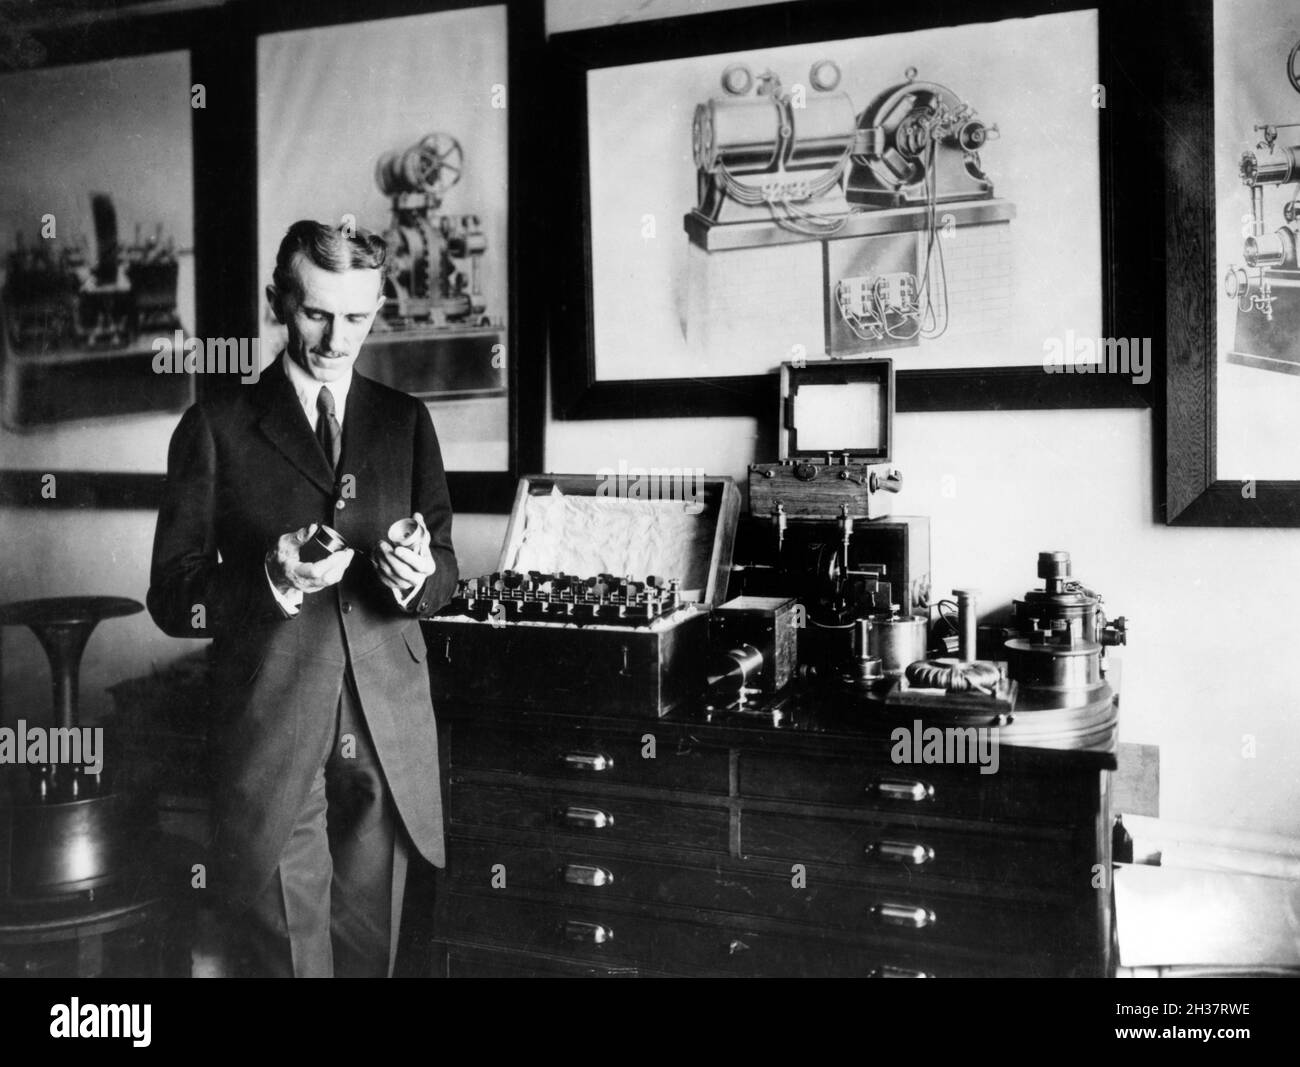 Nikola Tesla (1856-1943) dans son laboratoire de New York, c.1910. Tesla était un inventeur serbe américain et ingénieur plus connu pour son travail sur l'alimentation électrique en courant alternatif (AC). Banque D'Images